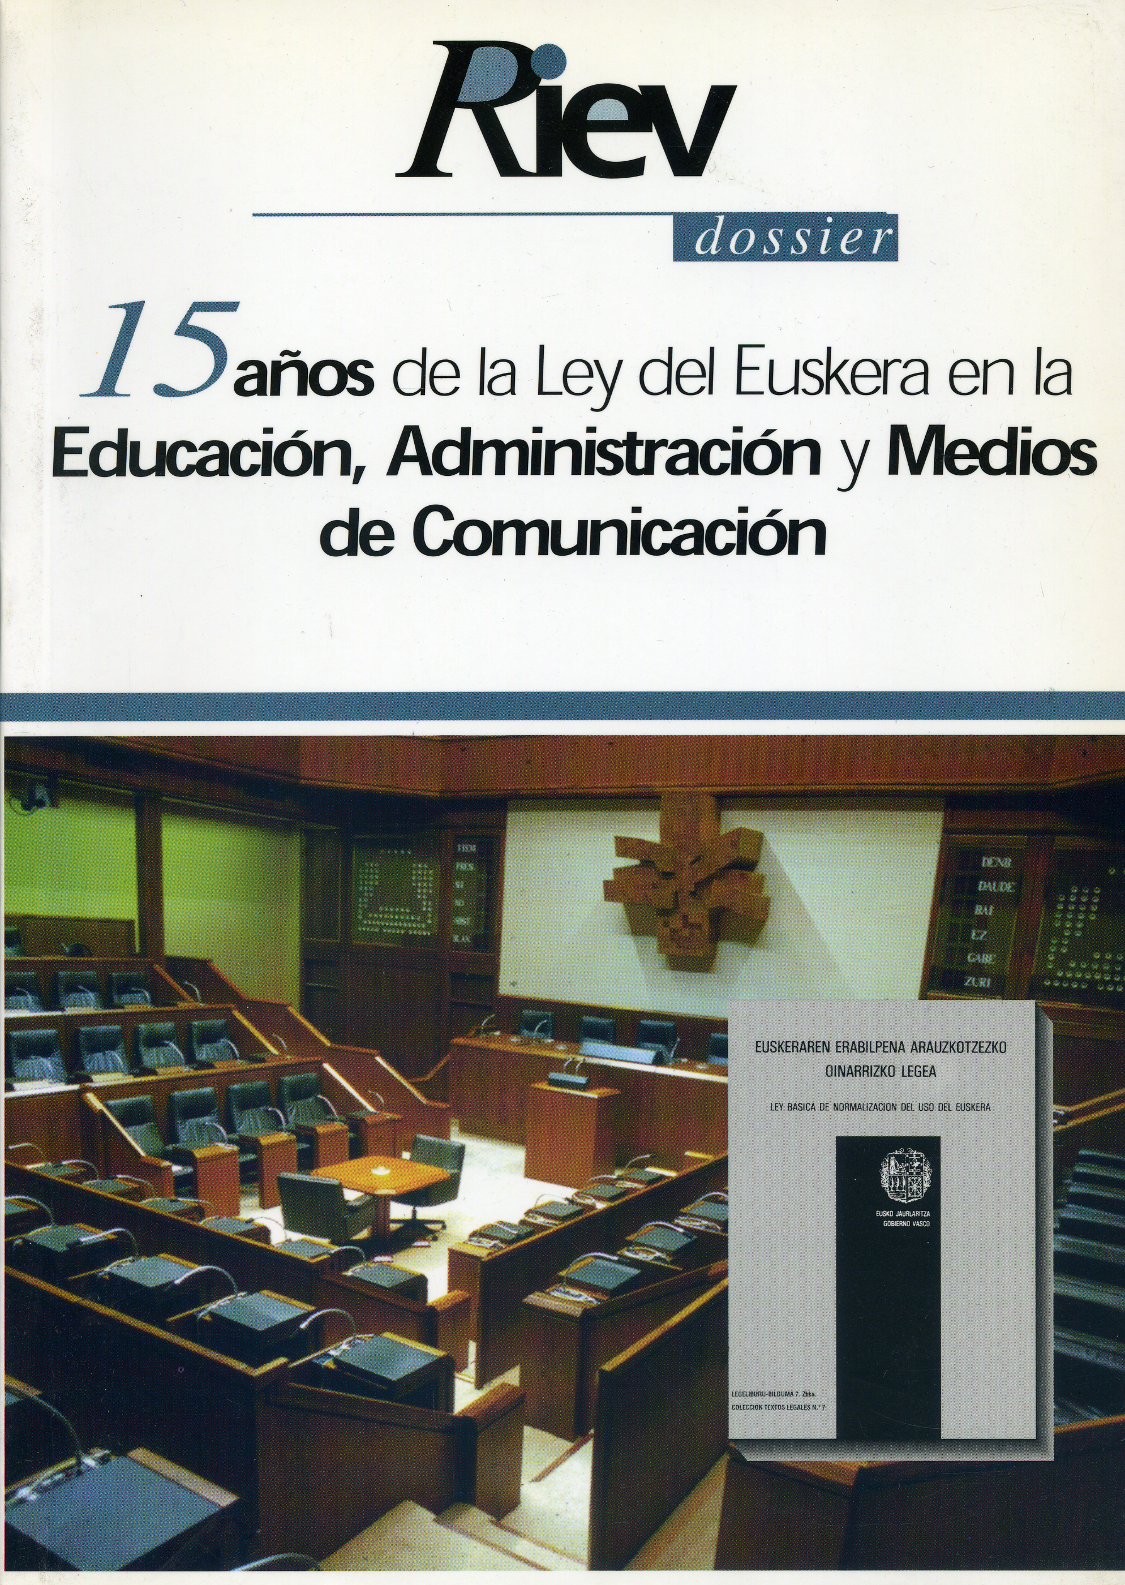 15 años de la Ley del Euskera en la Educación, Administración y Medios de Comunicación [RIEV 43, 2 (1998)]